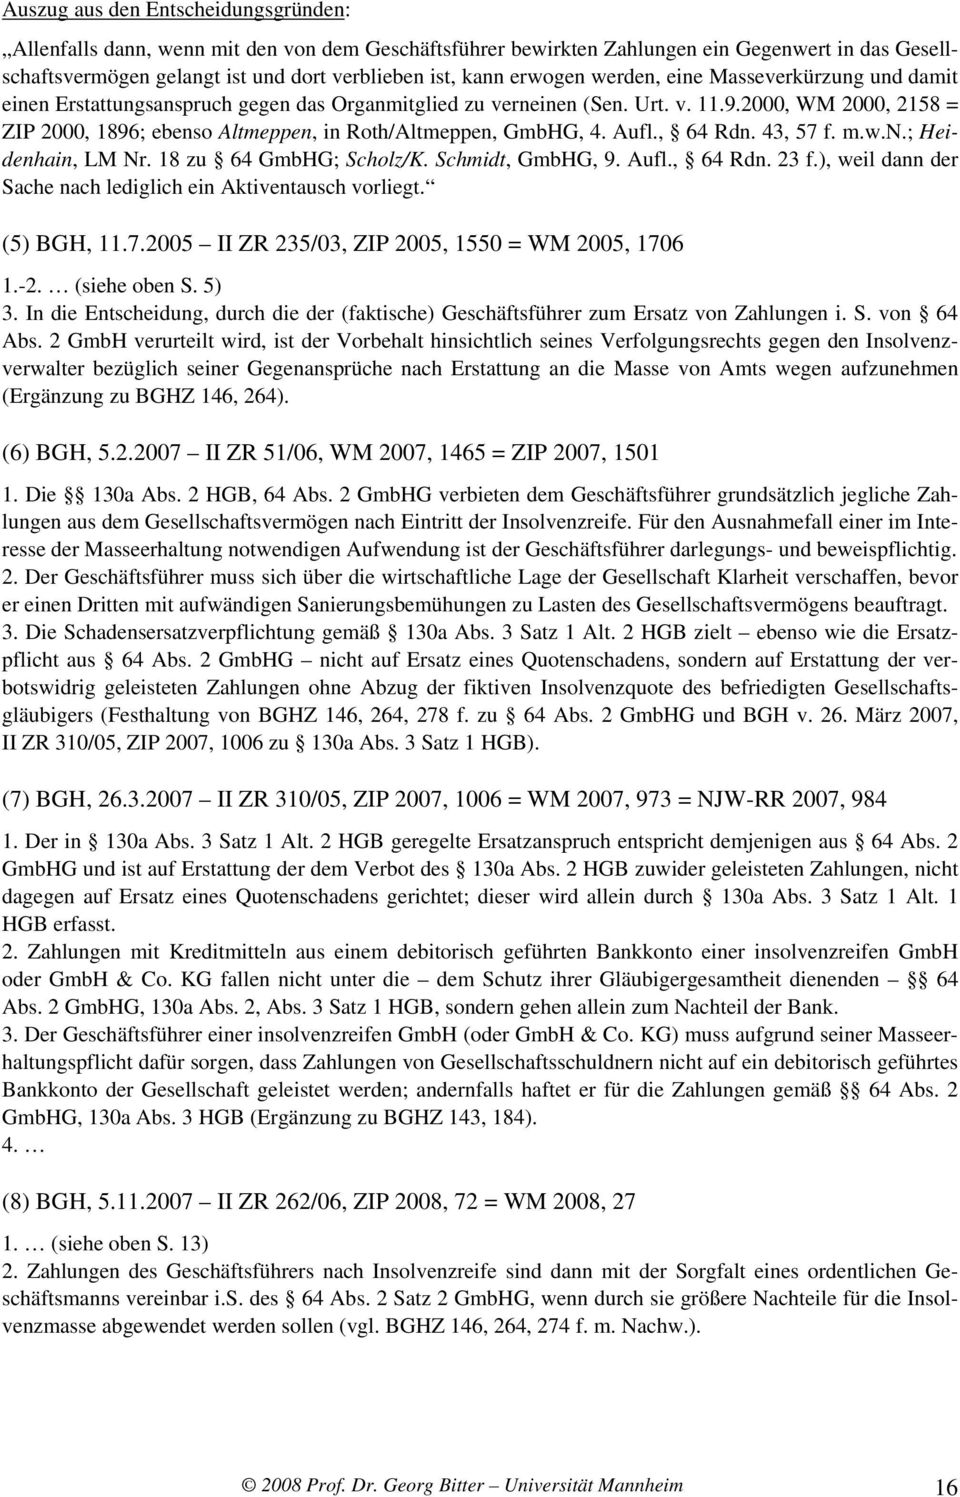 w.n.; Heidenhain, LM Nr. 18 zu 64 GmbHG; Scholz/K. Schmidt, GmbHG, 9. Aufl., 64 Rdn. 23 f.), weil dann der Sache nach lediglich ein Aktiventausch vorliegt. (5) BGH, 11.7.